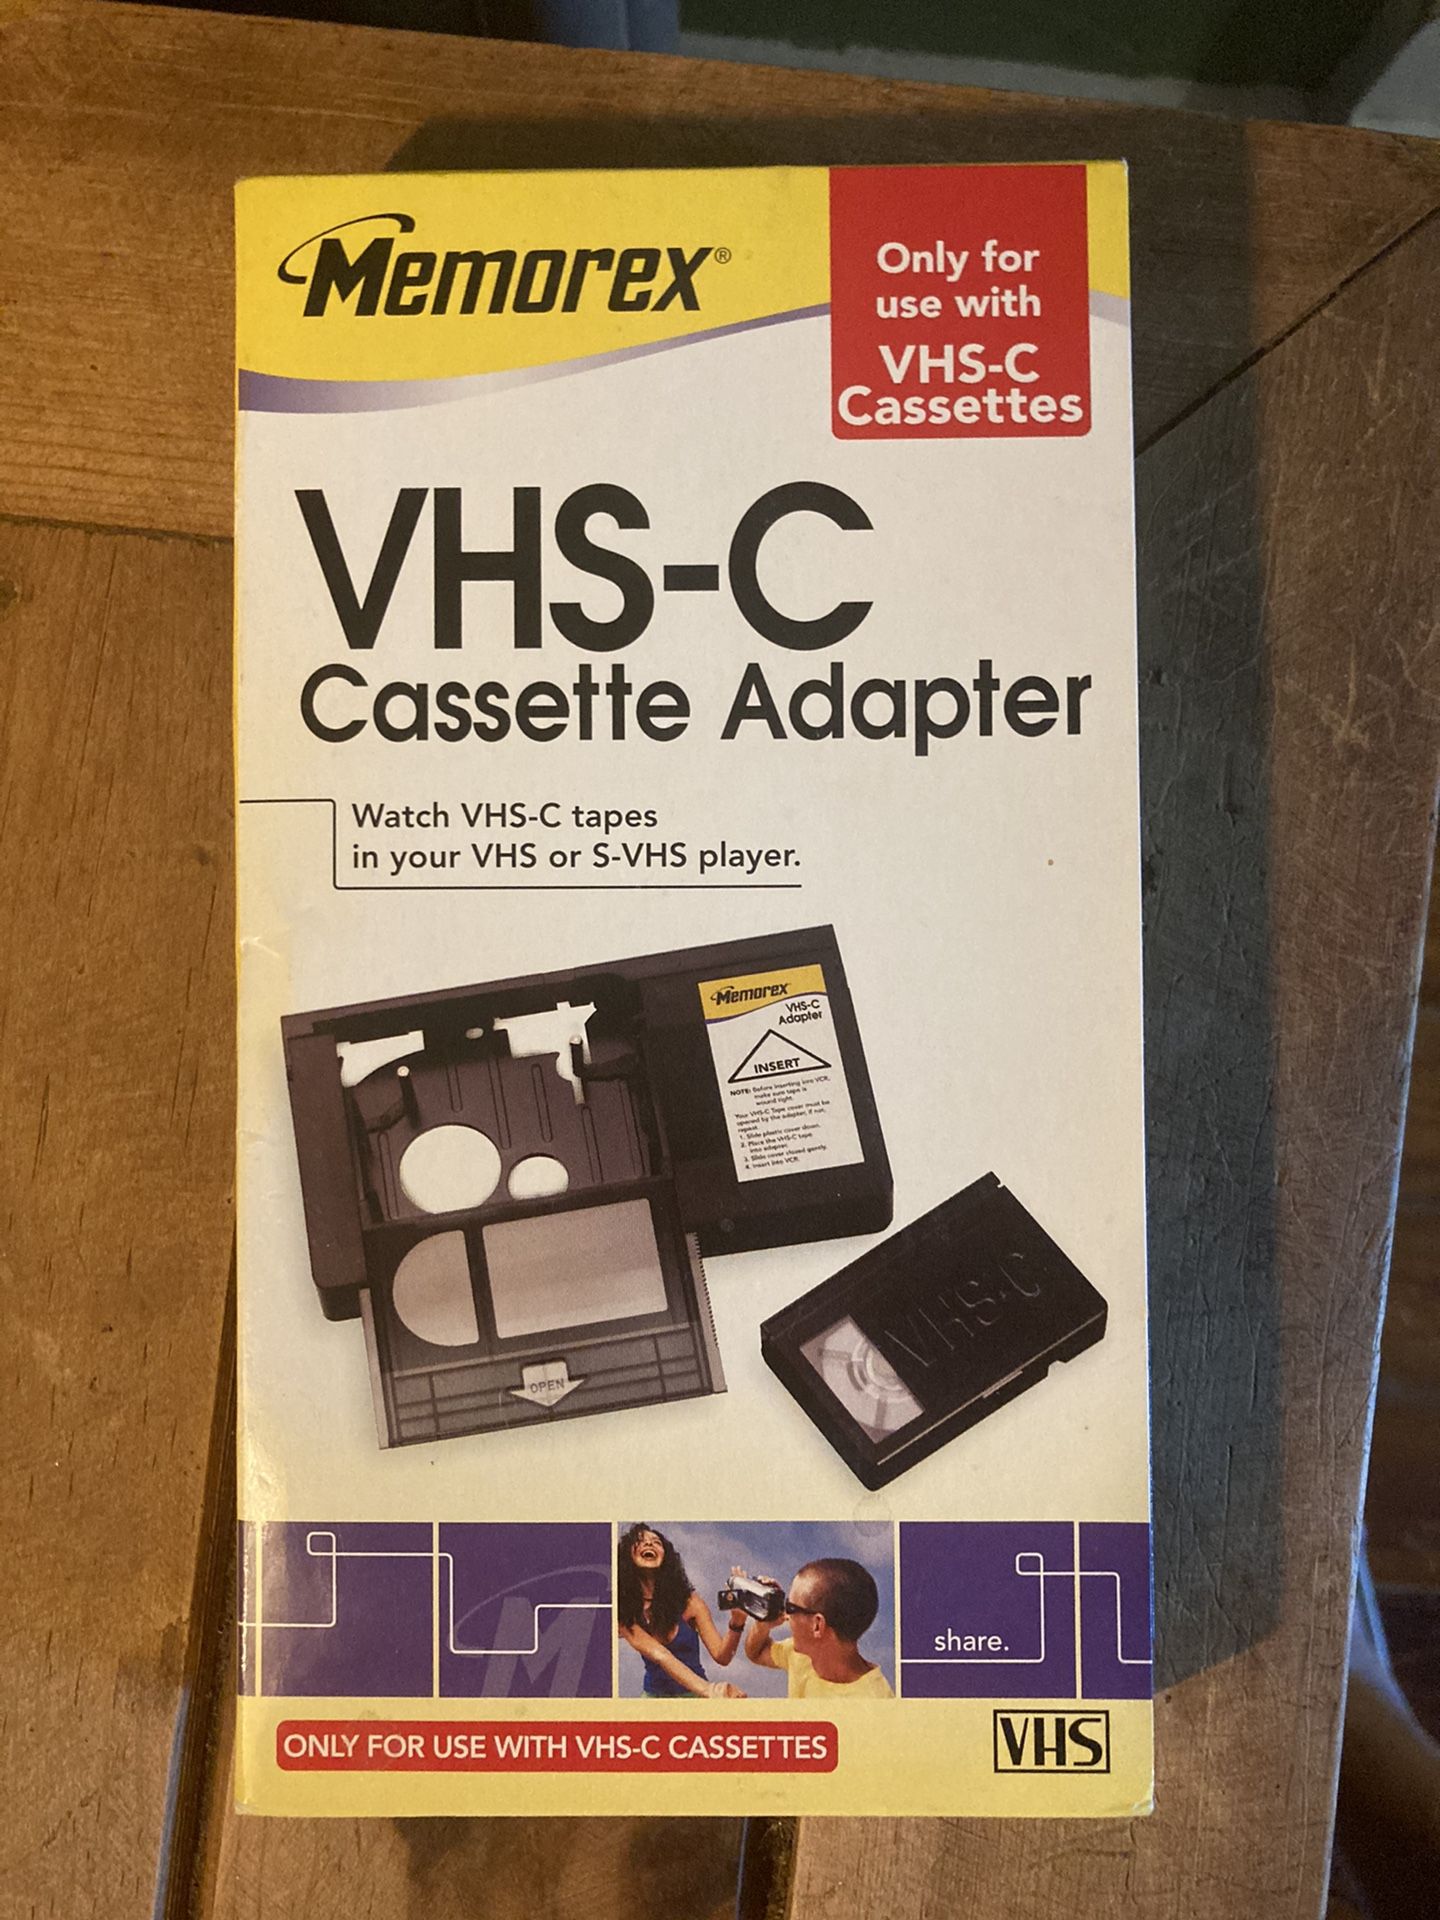 VHS-C Cassette Adapter by Memorex